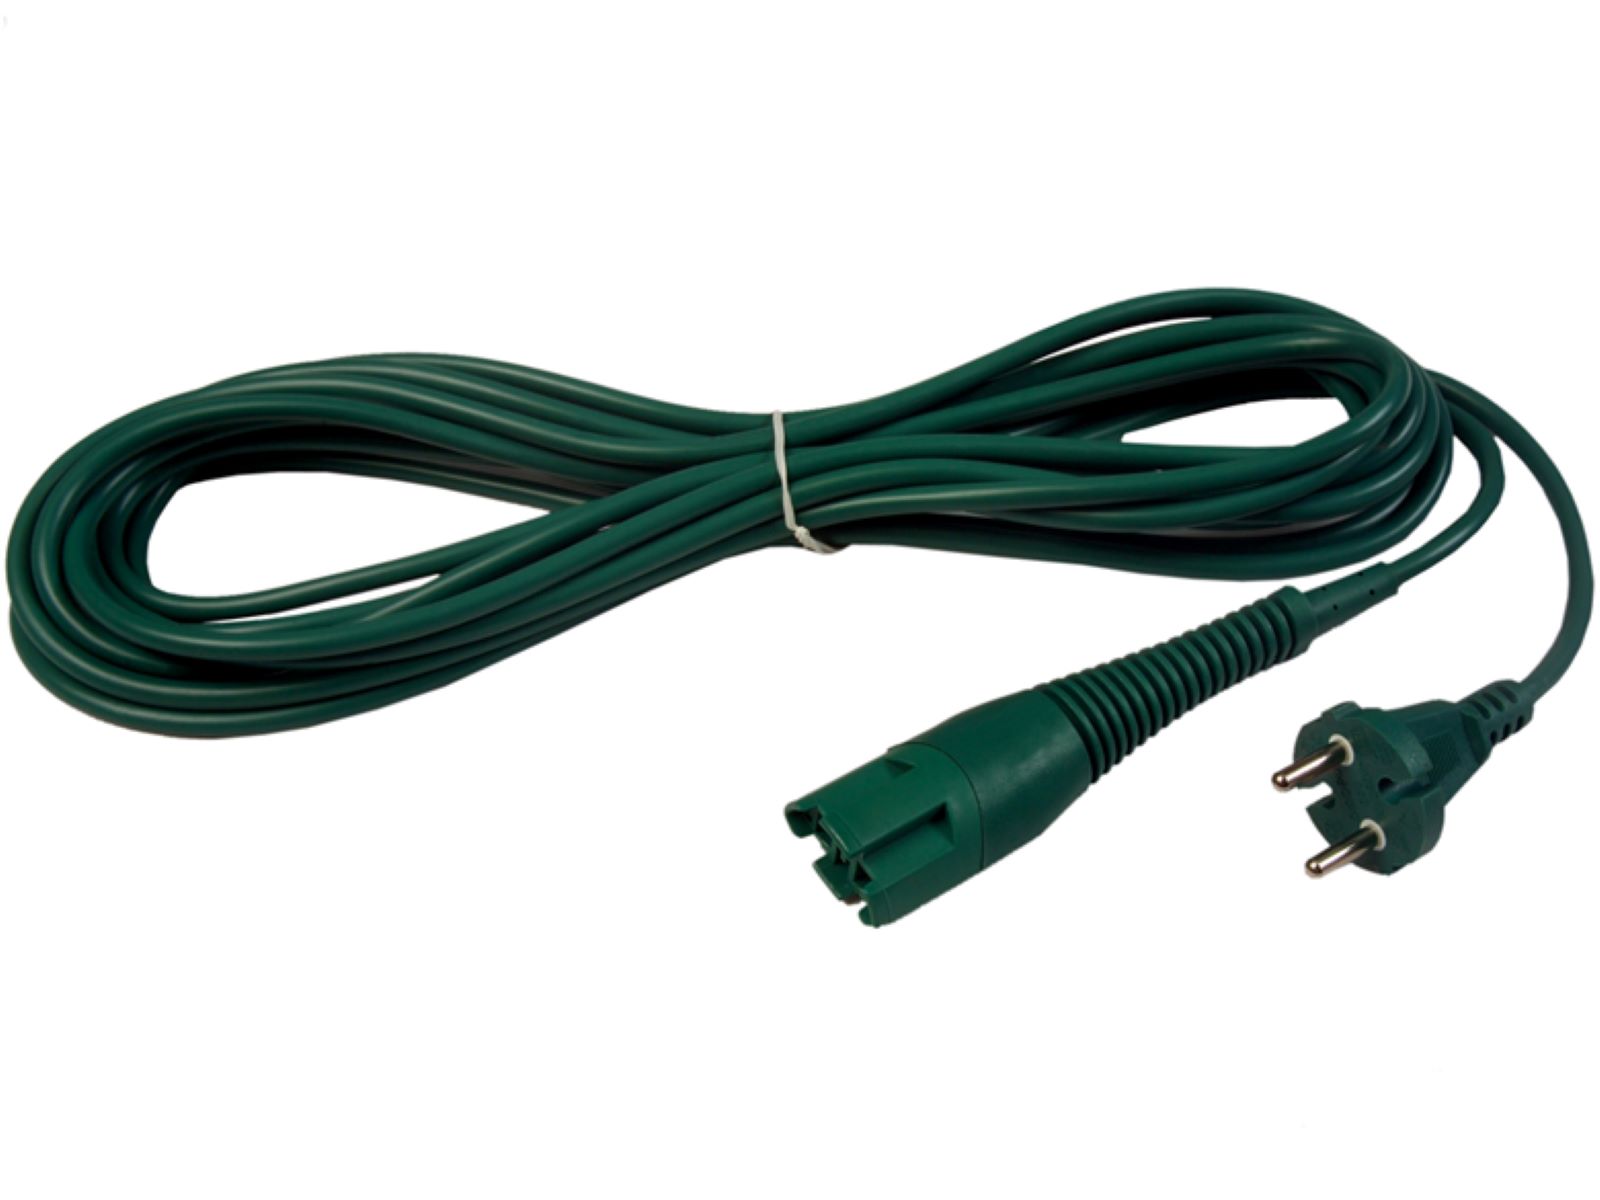 Kabel, Stromkabel, Anschlusskabel kompatibel mit Vorwerk Kobold 130, 131 - 10 Meter